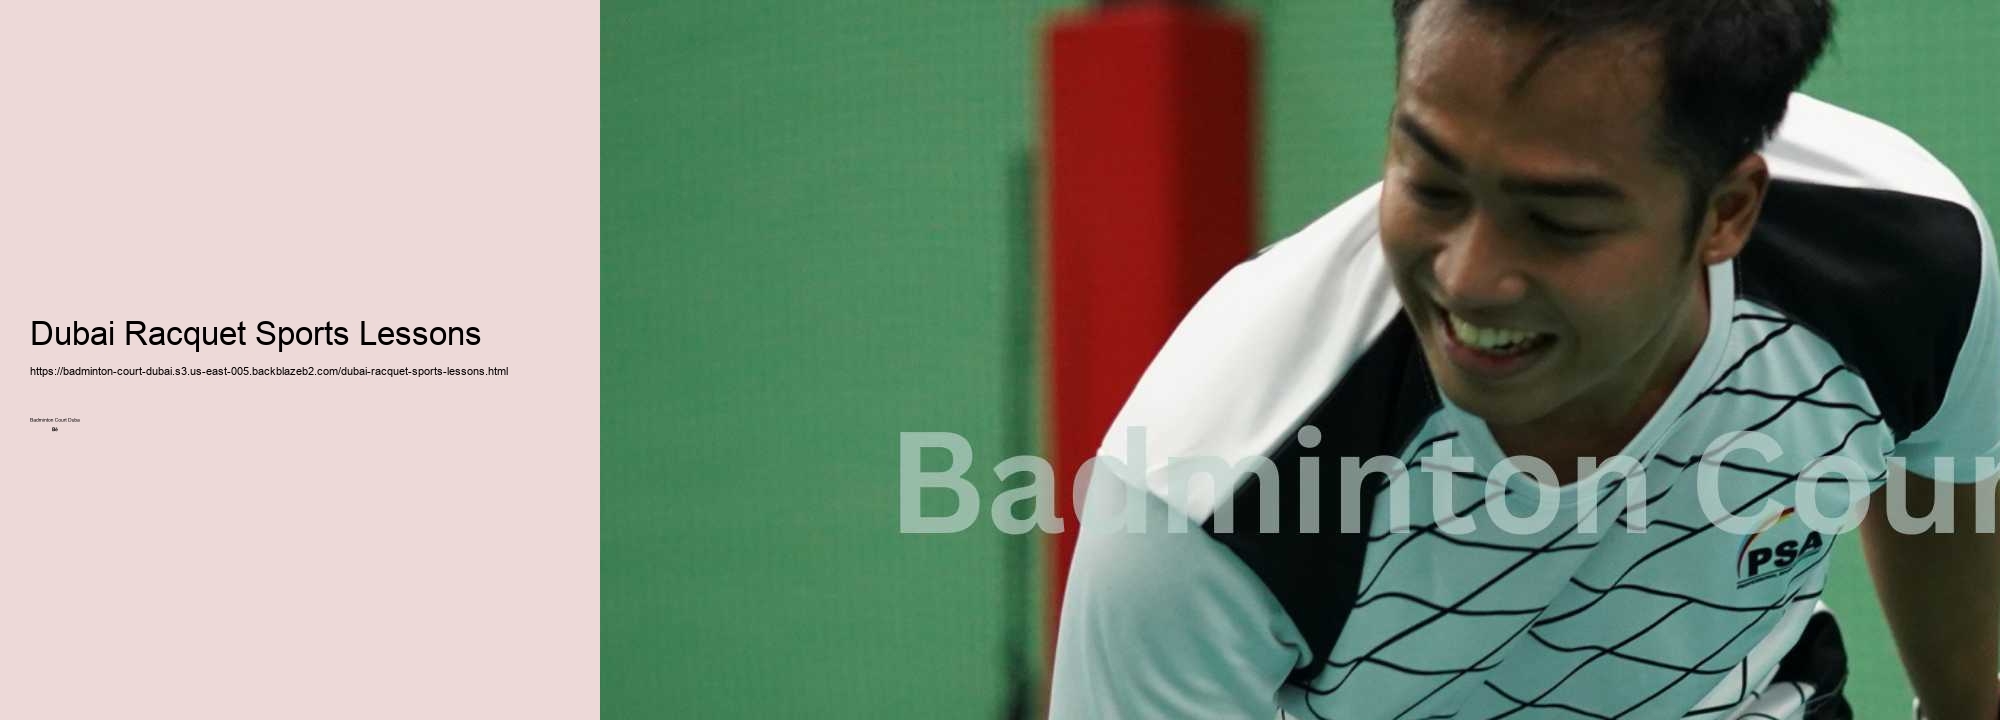 Dubai Racquet Sports Lessons